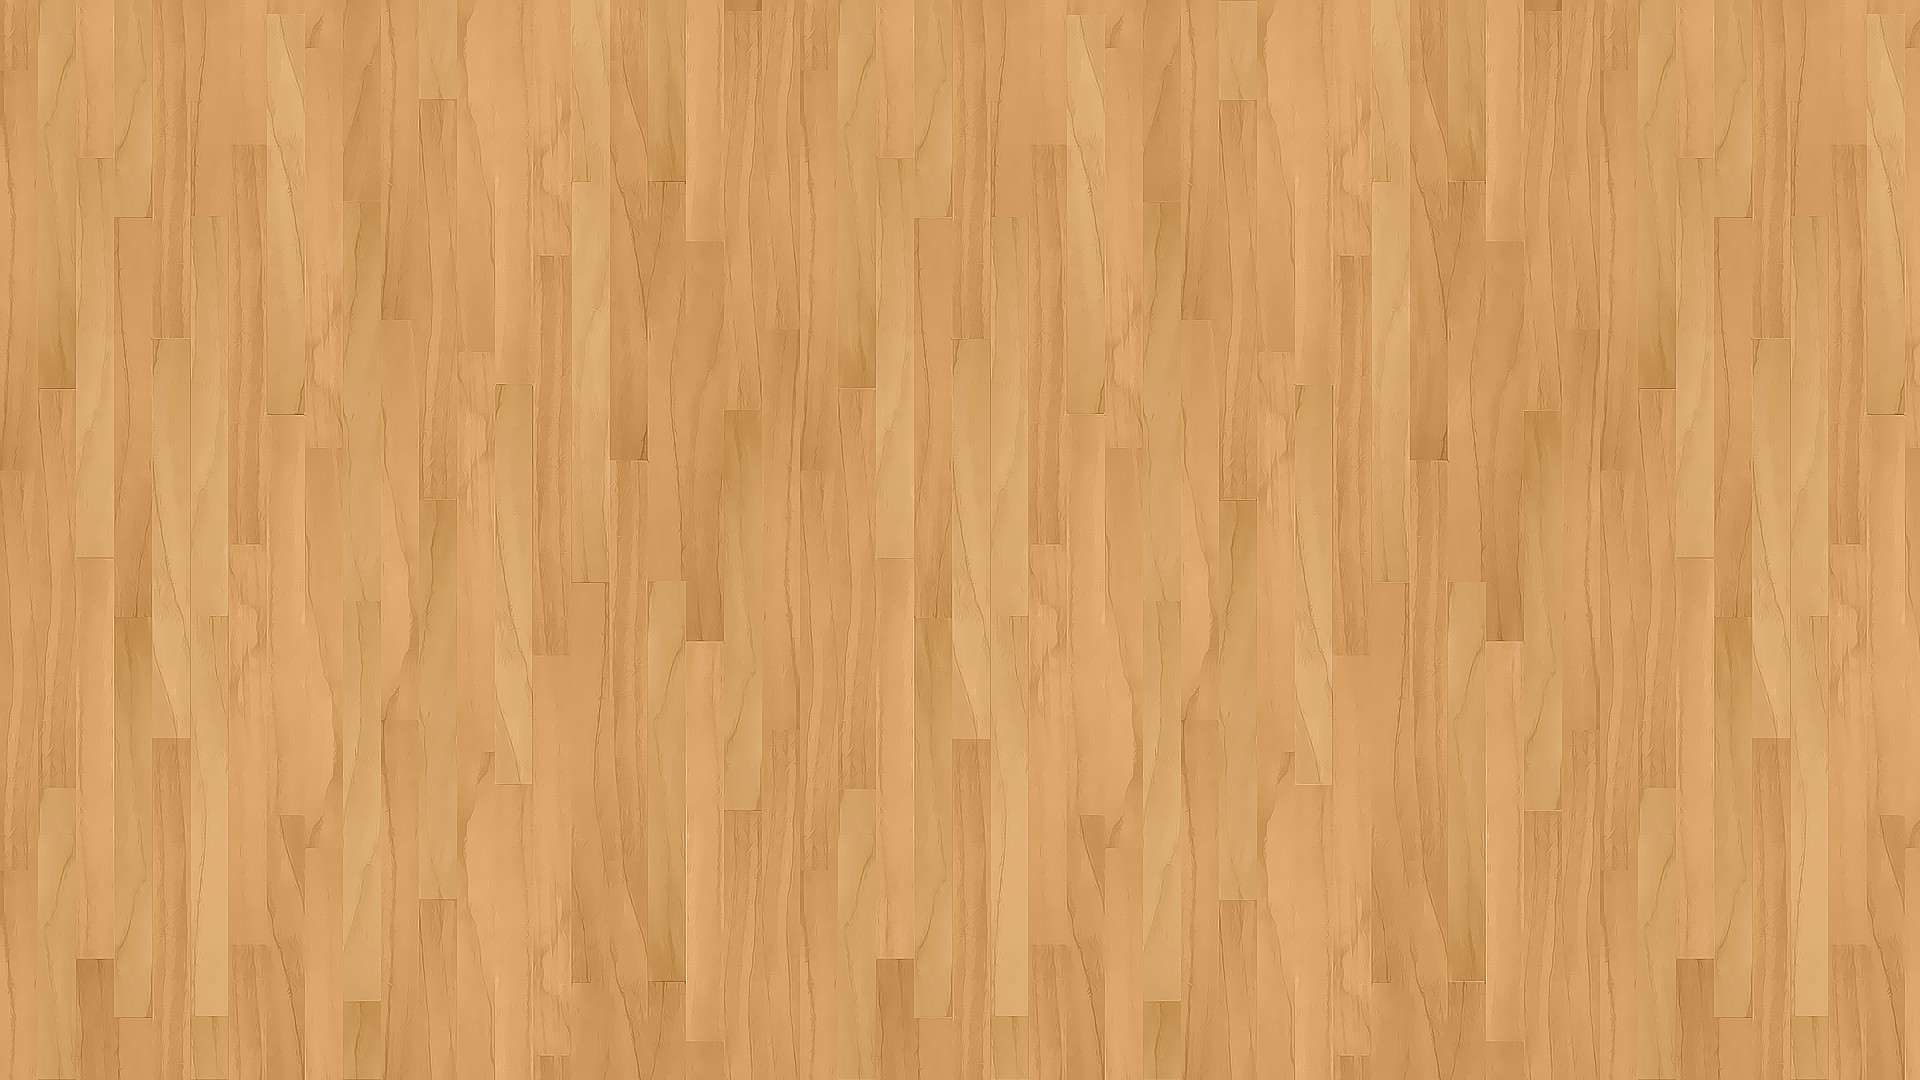 خلفيات خشب , اجمل الخلفيات الخشبية لمختلف التصميمات - عيون الرومانسية